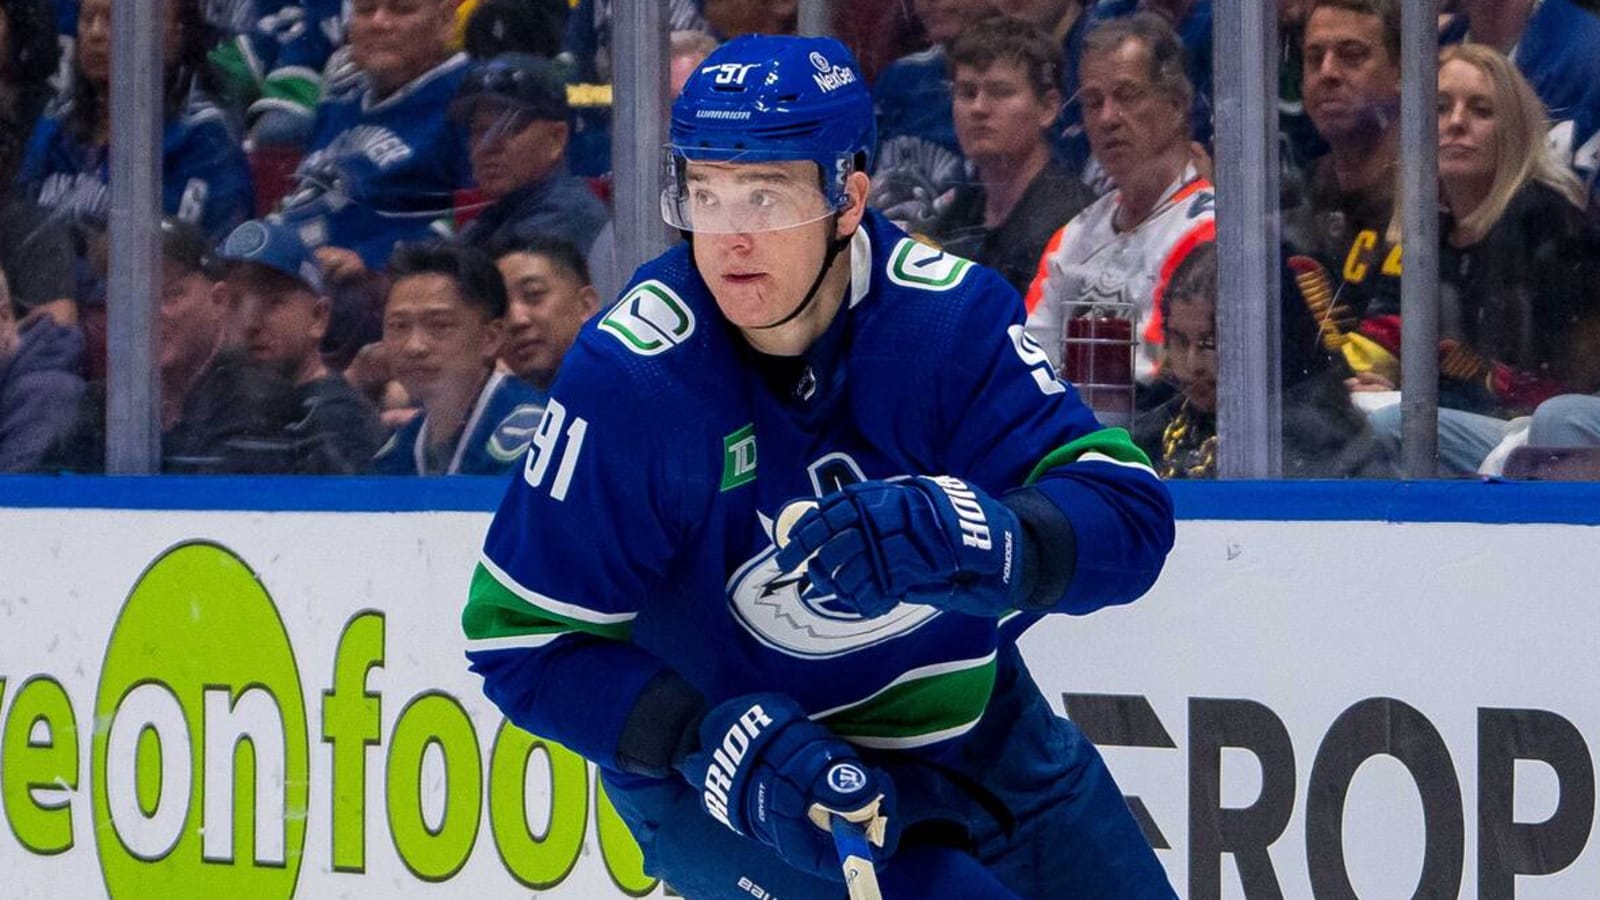 Nikita Zadorov takes a shot at NHL over teammate's suspension